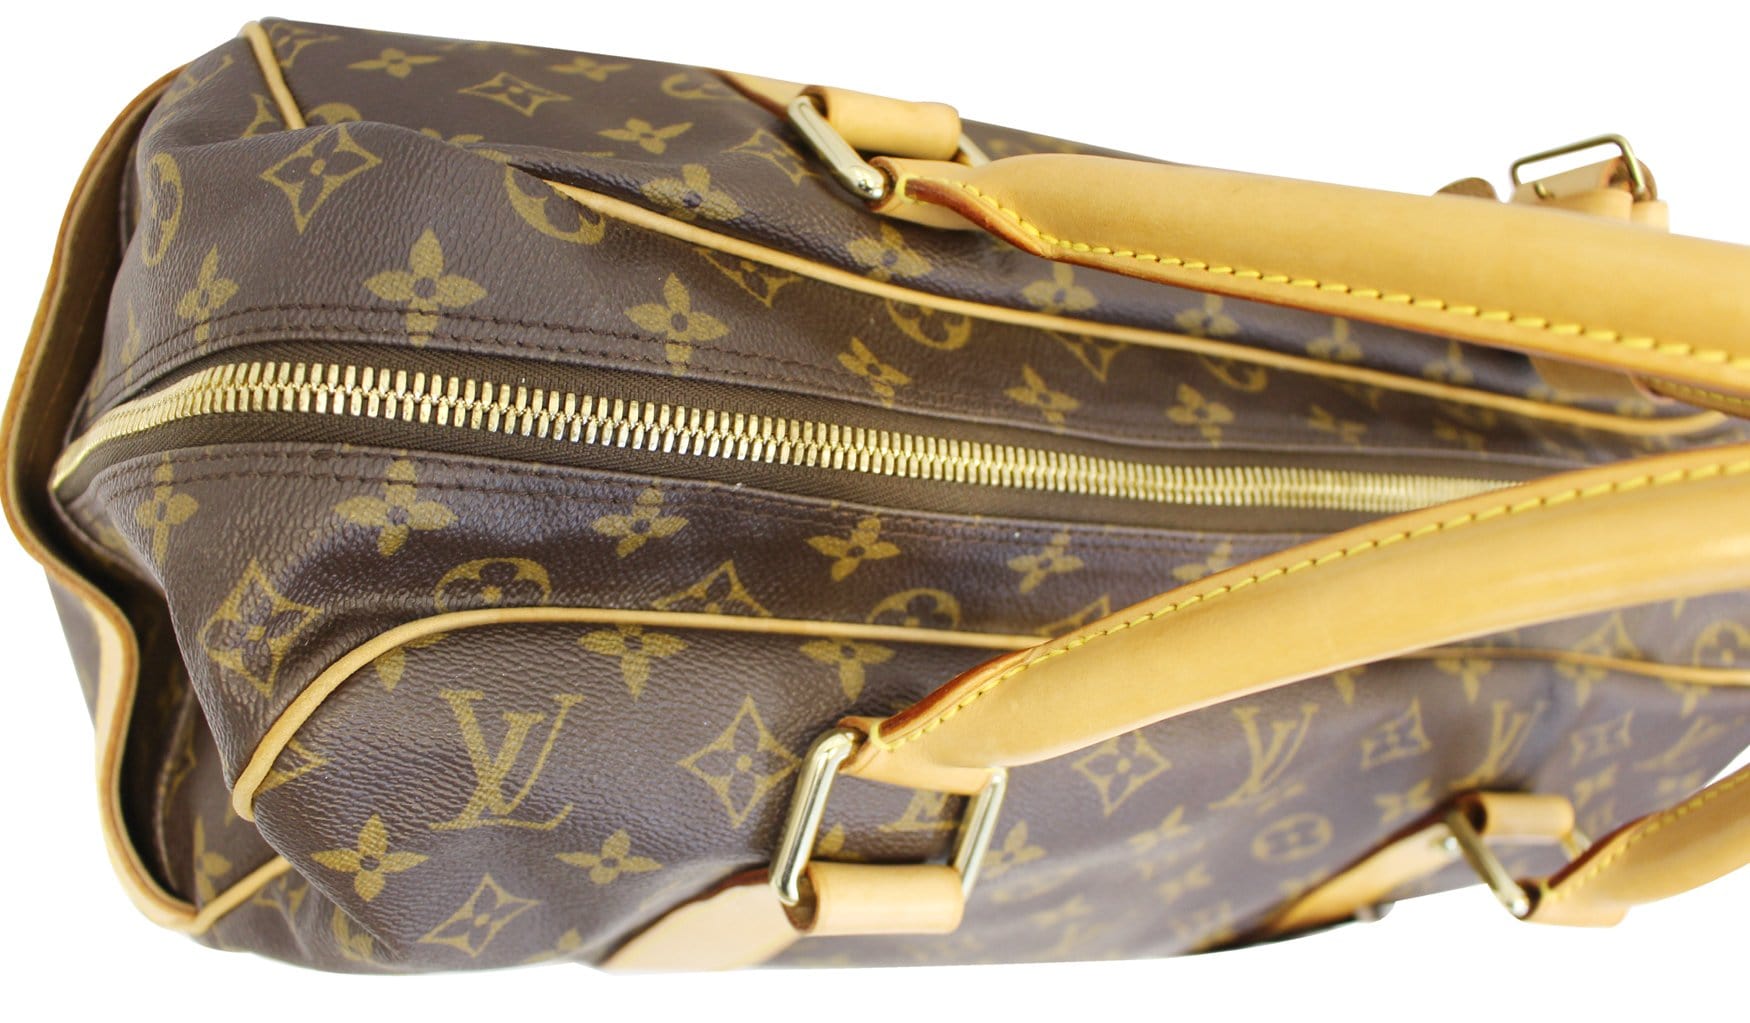 Louis Vuitton Vintage Carryall Travel Bag, $3,278, farfetch.com